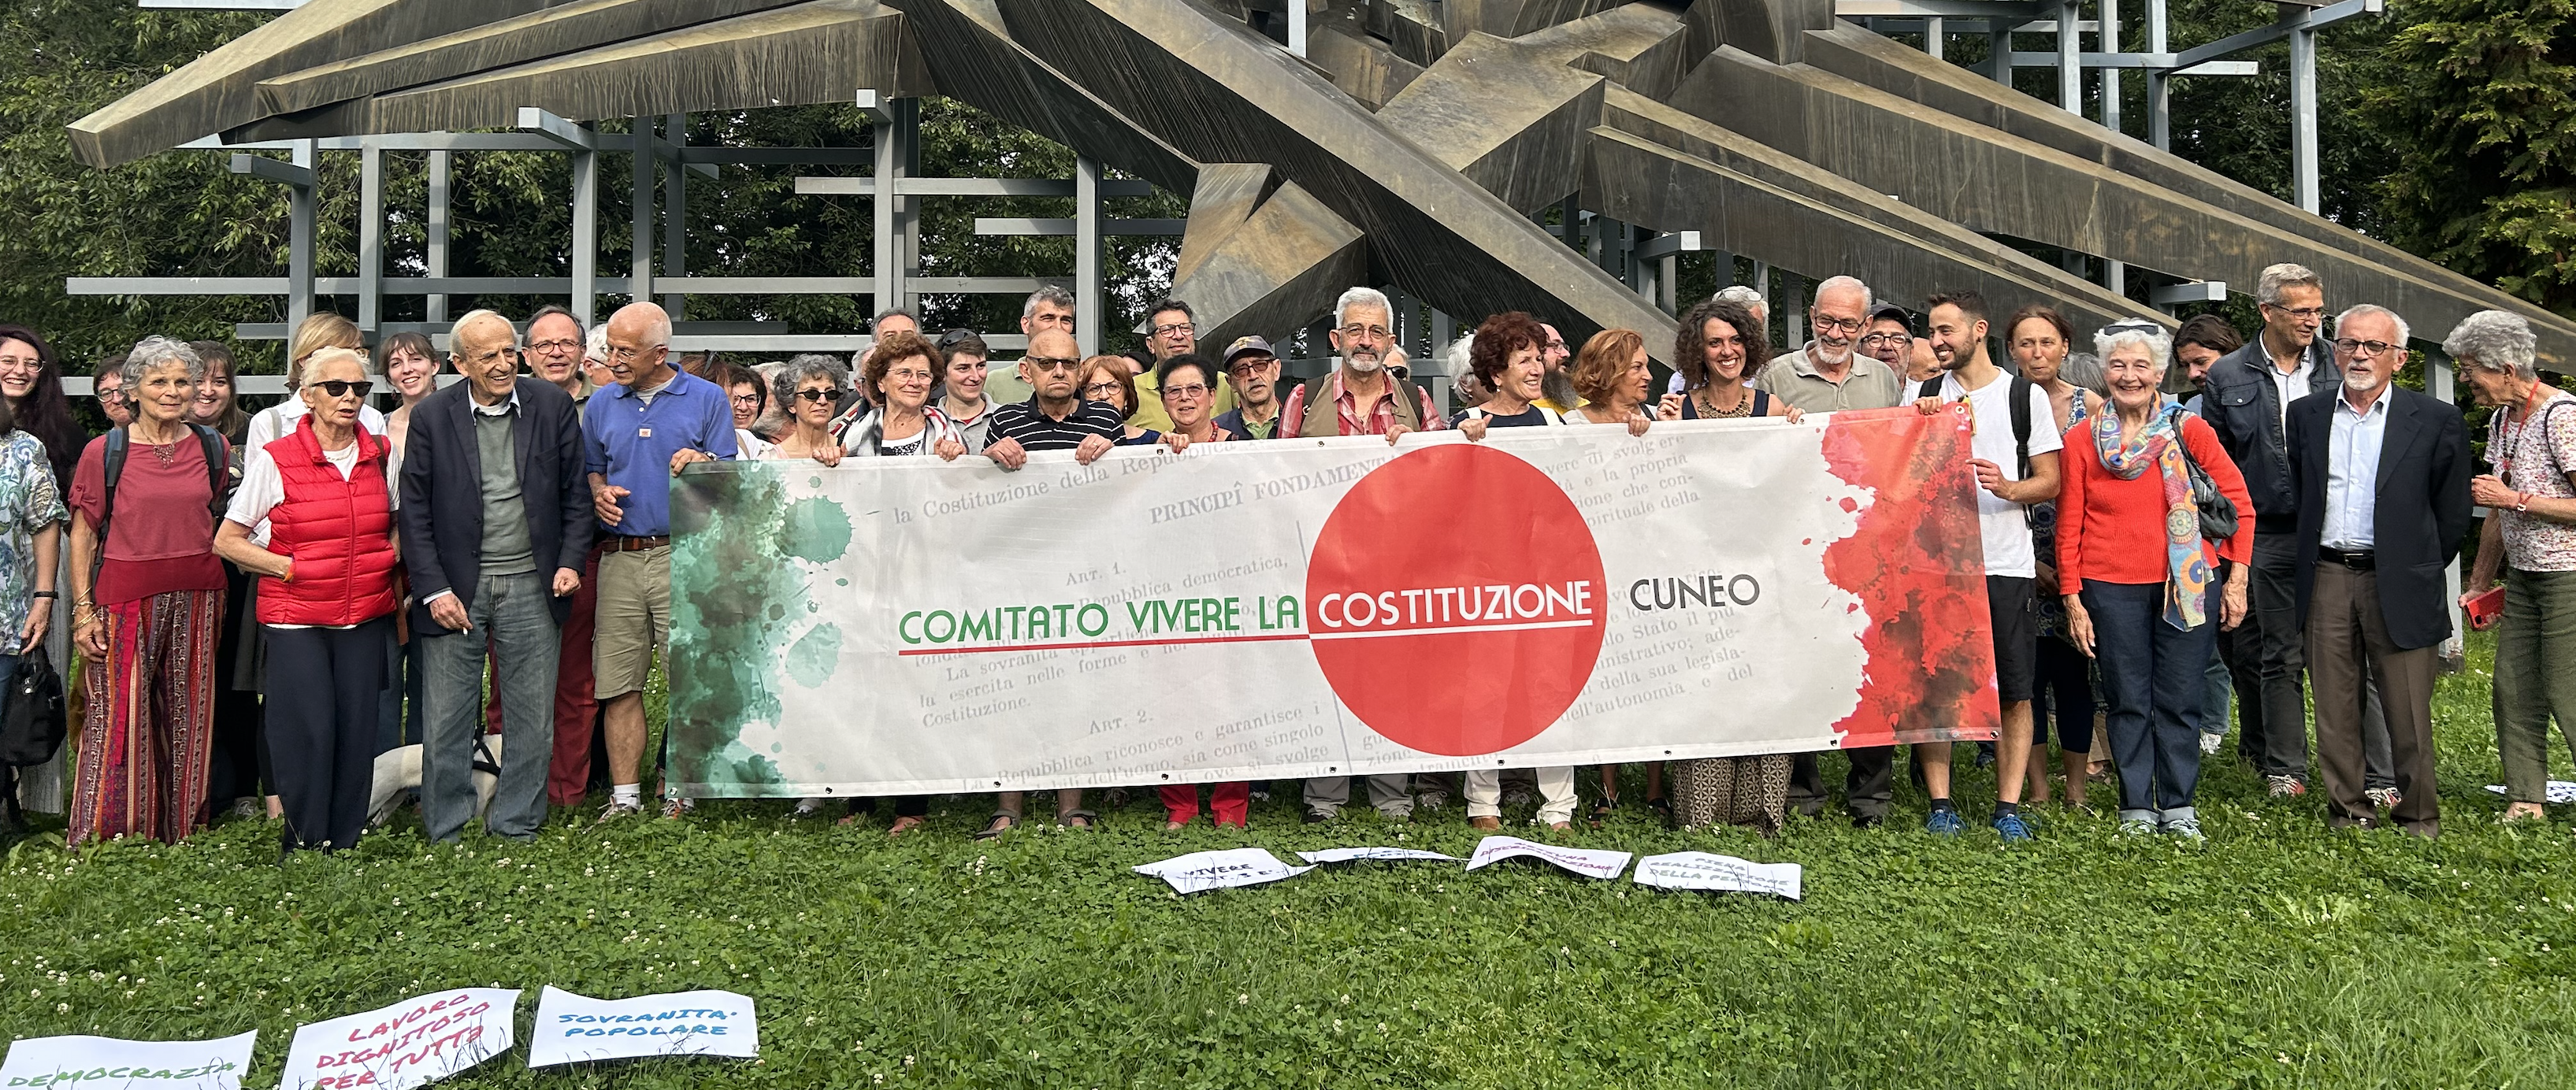 La Guida - Nasce a Cuneo il comitato “Vivere la Costituzione”